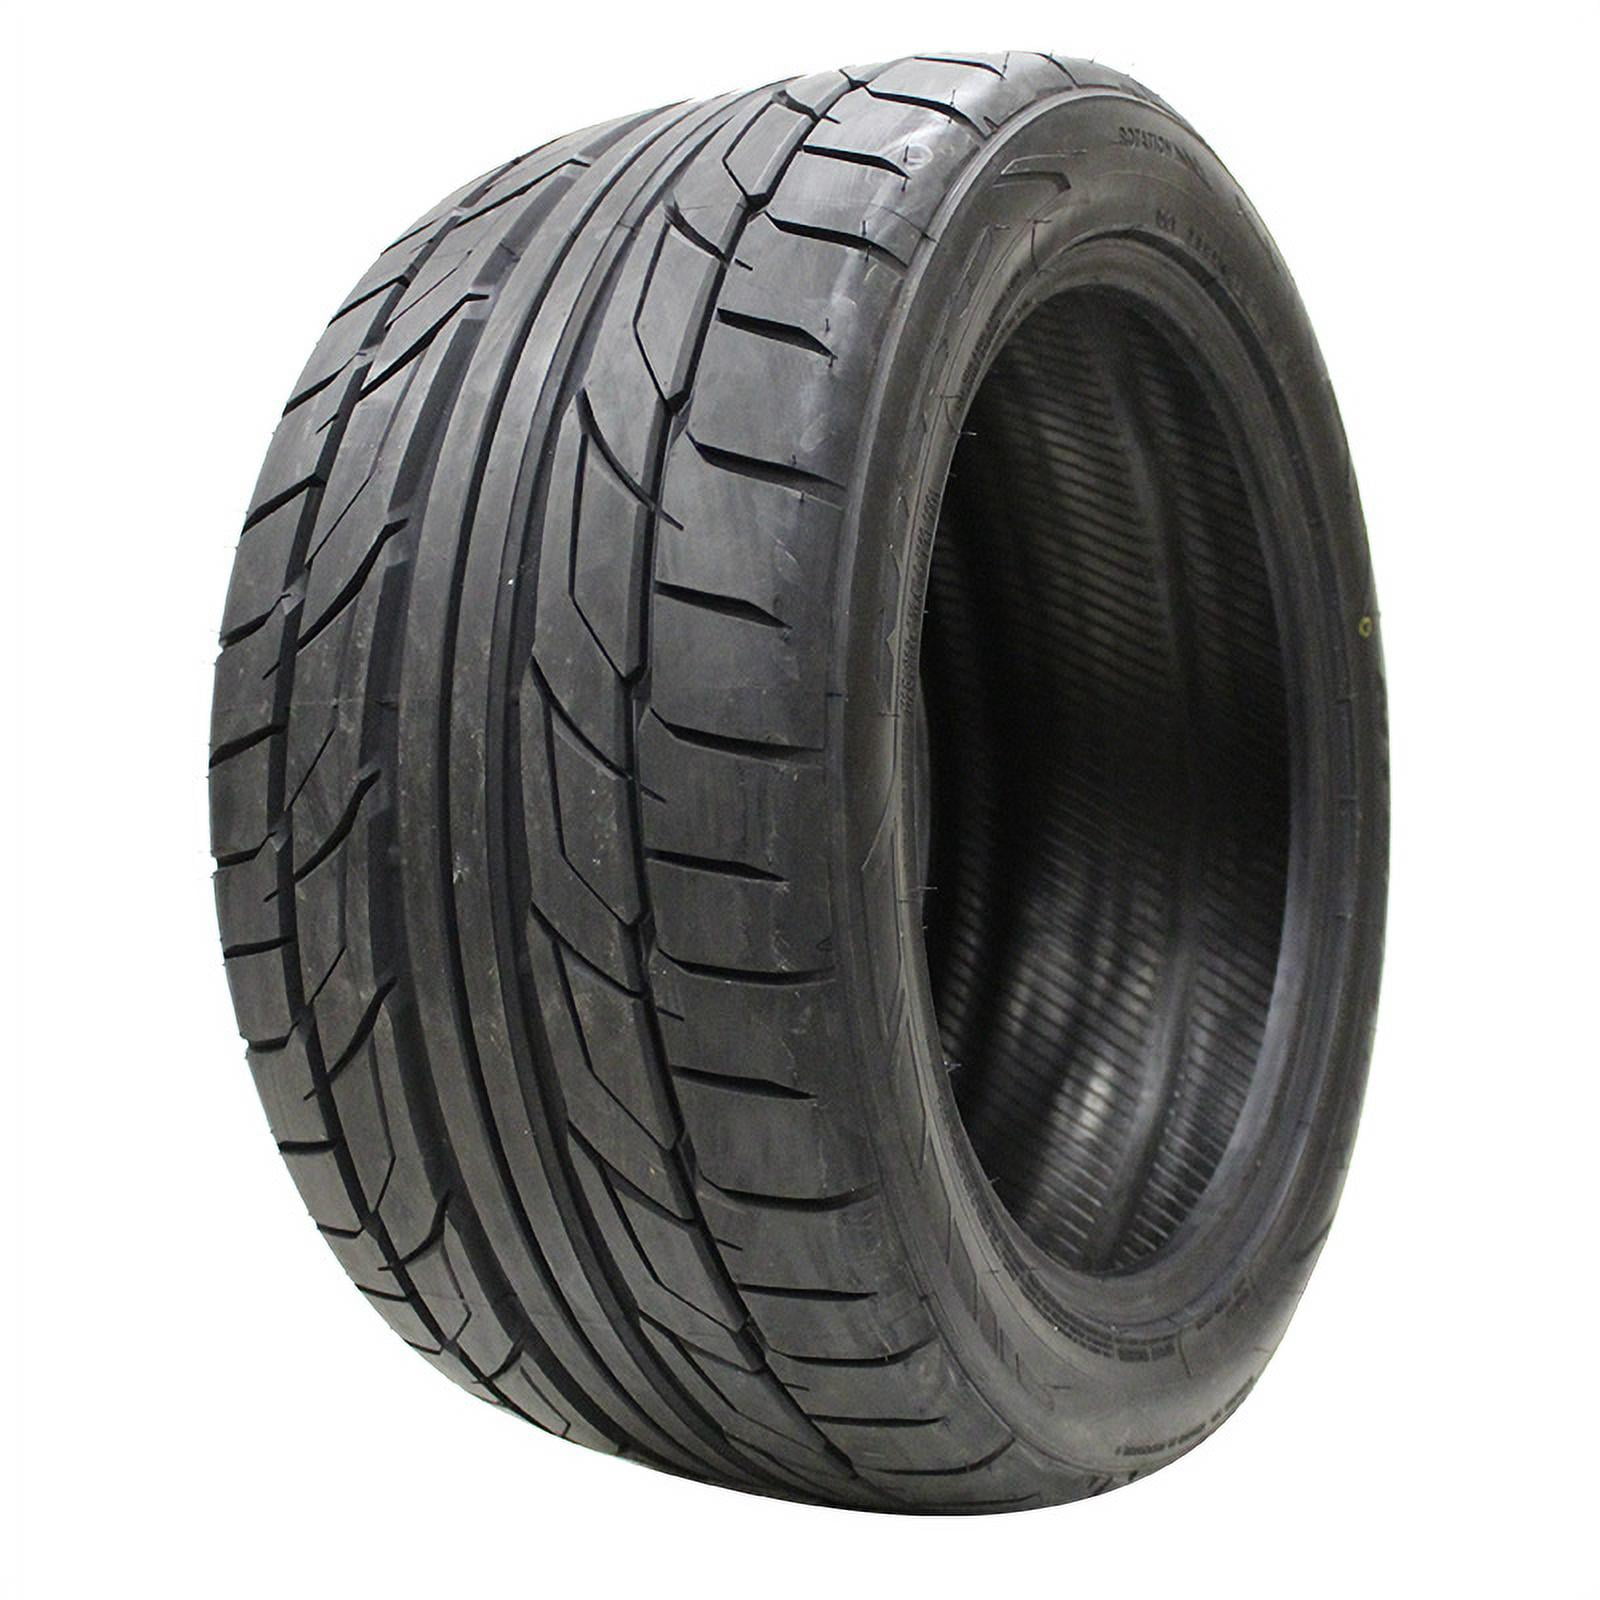 4-Nitto NT555 G2 225/40ZR18 R18 92W XL Tires 